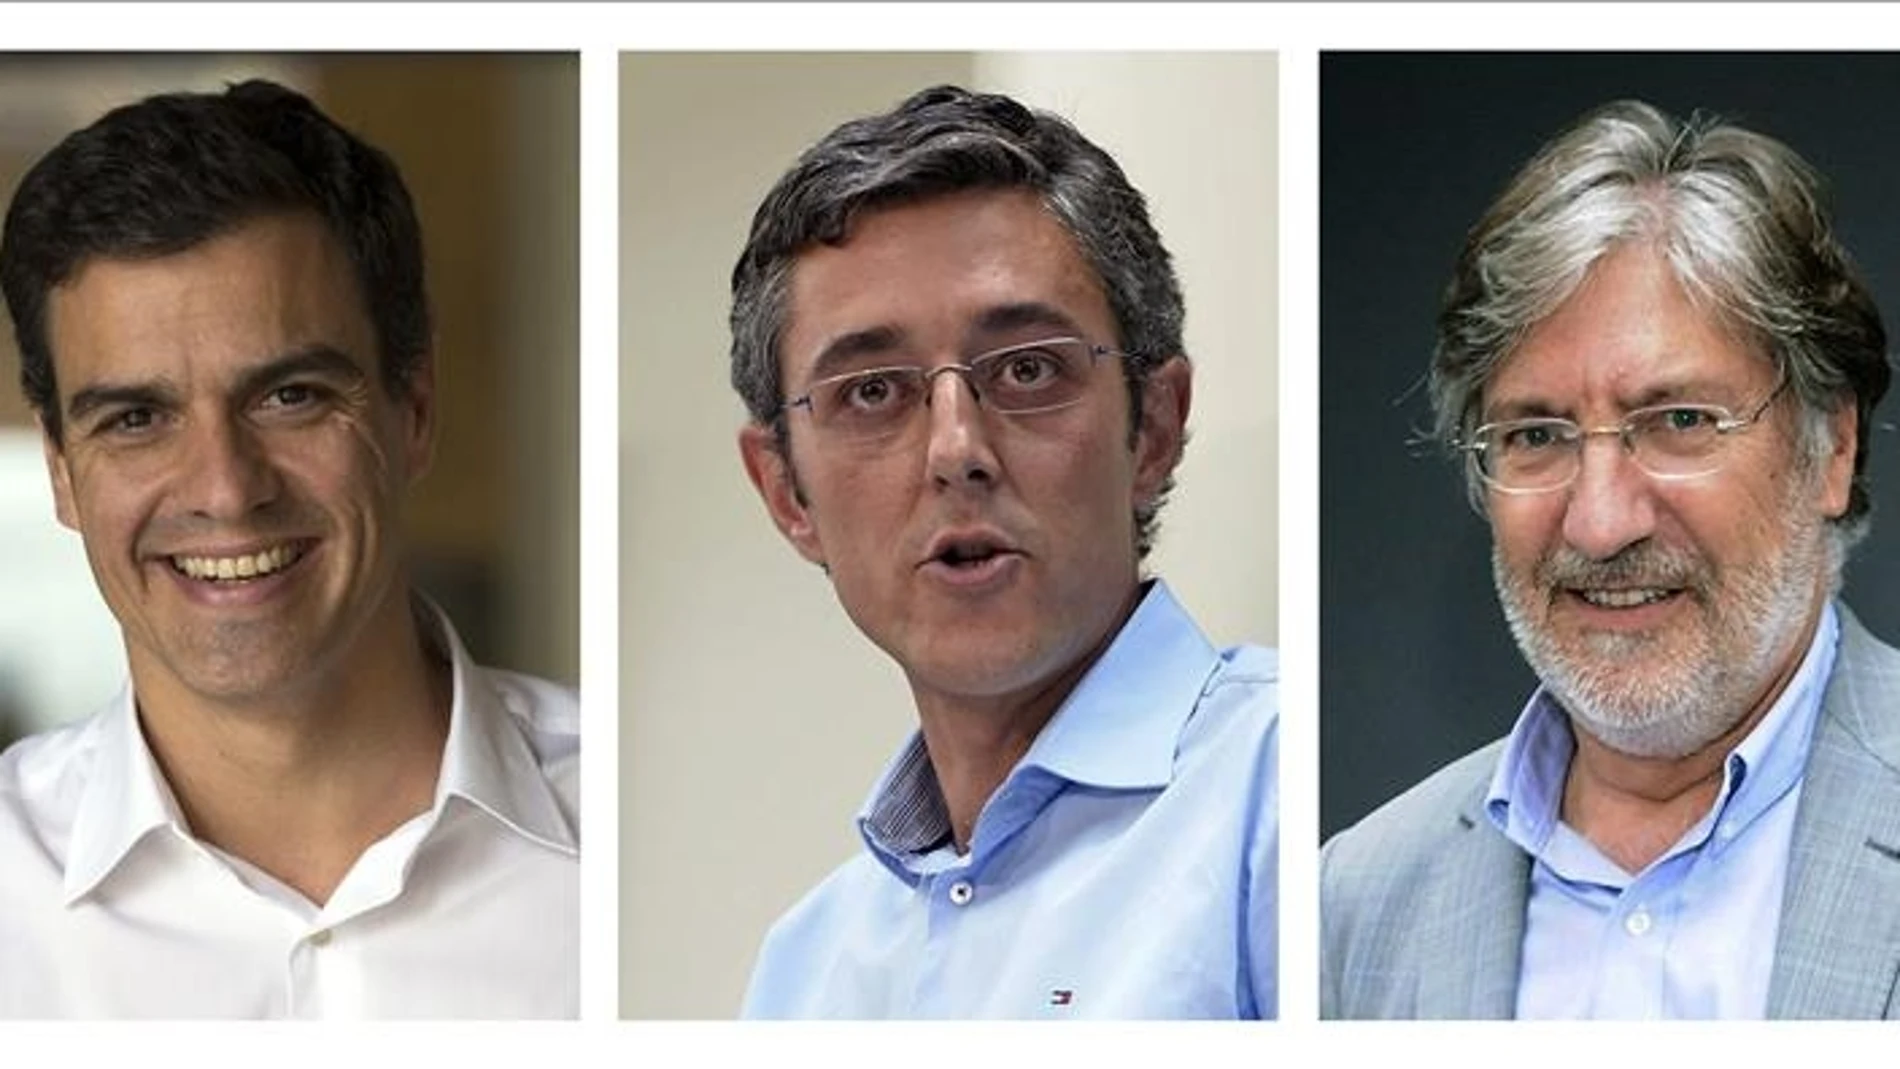 Sánchez, Madina y Pérez Tapias, los candidatos oficiales a las primarias del PSOE.